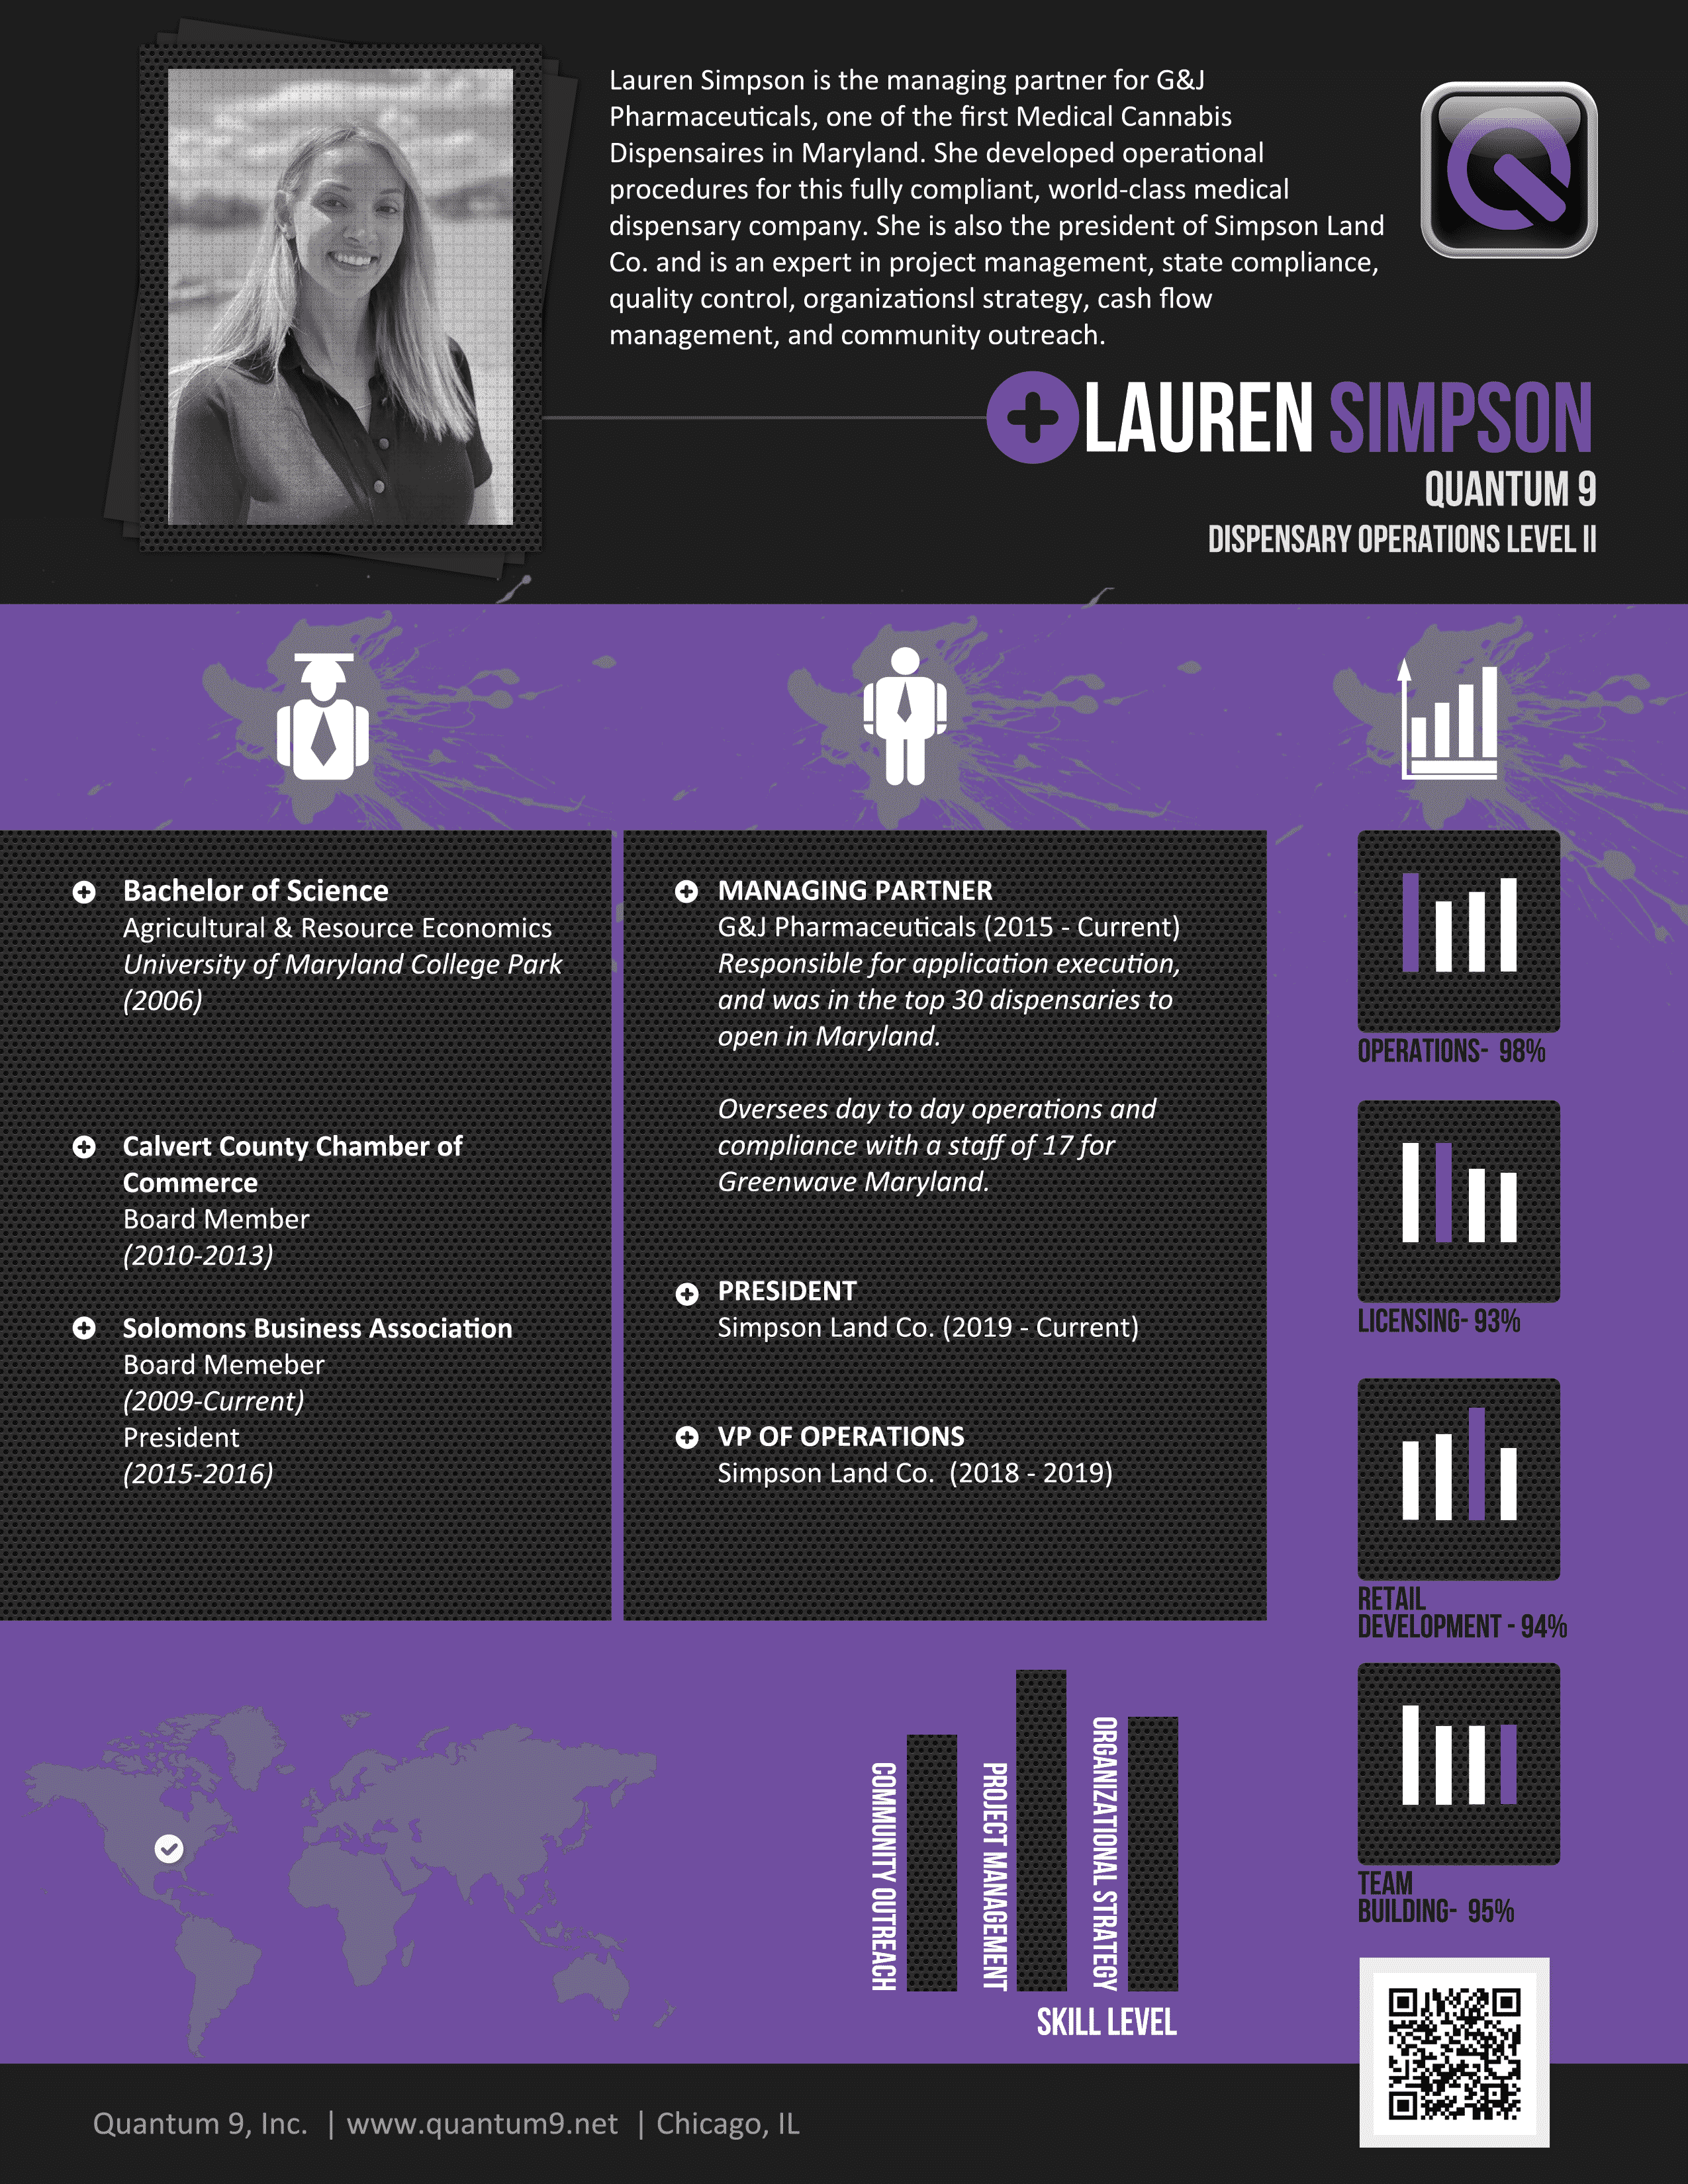 Lauren Simpson Q9 Profile